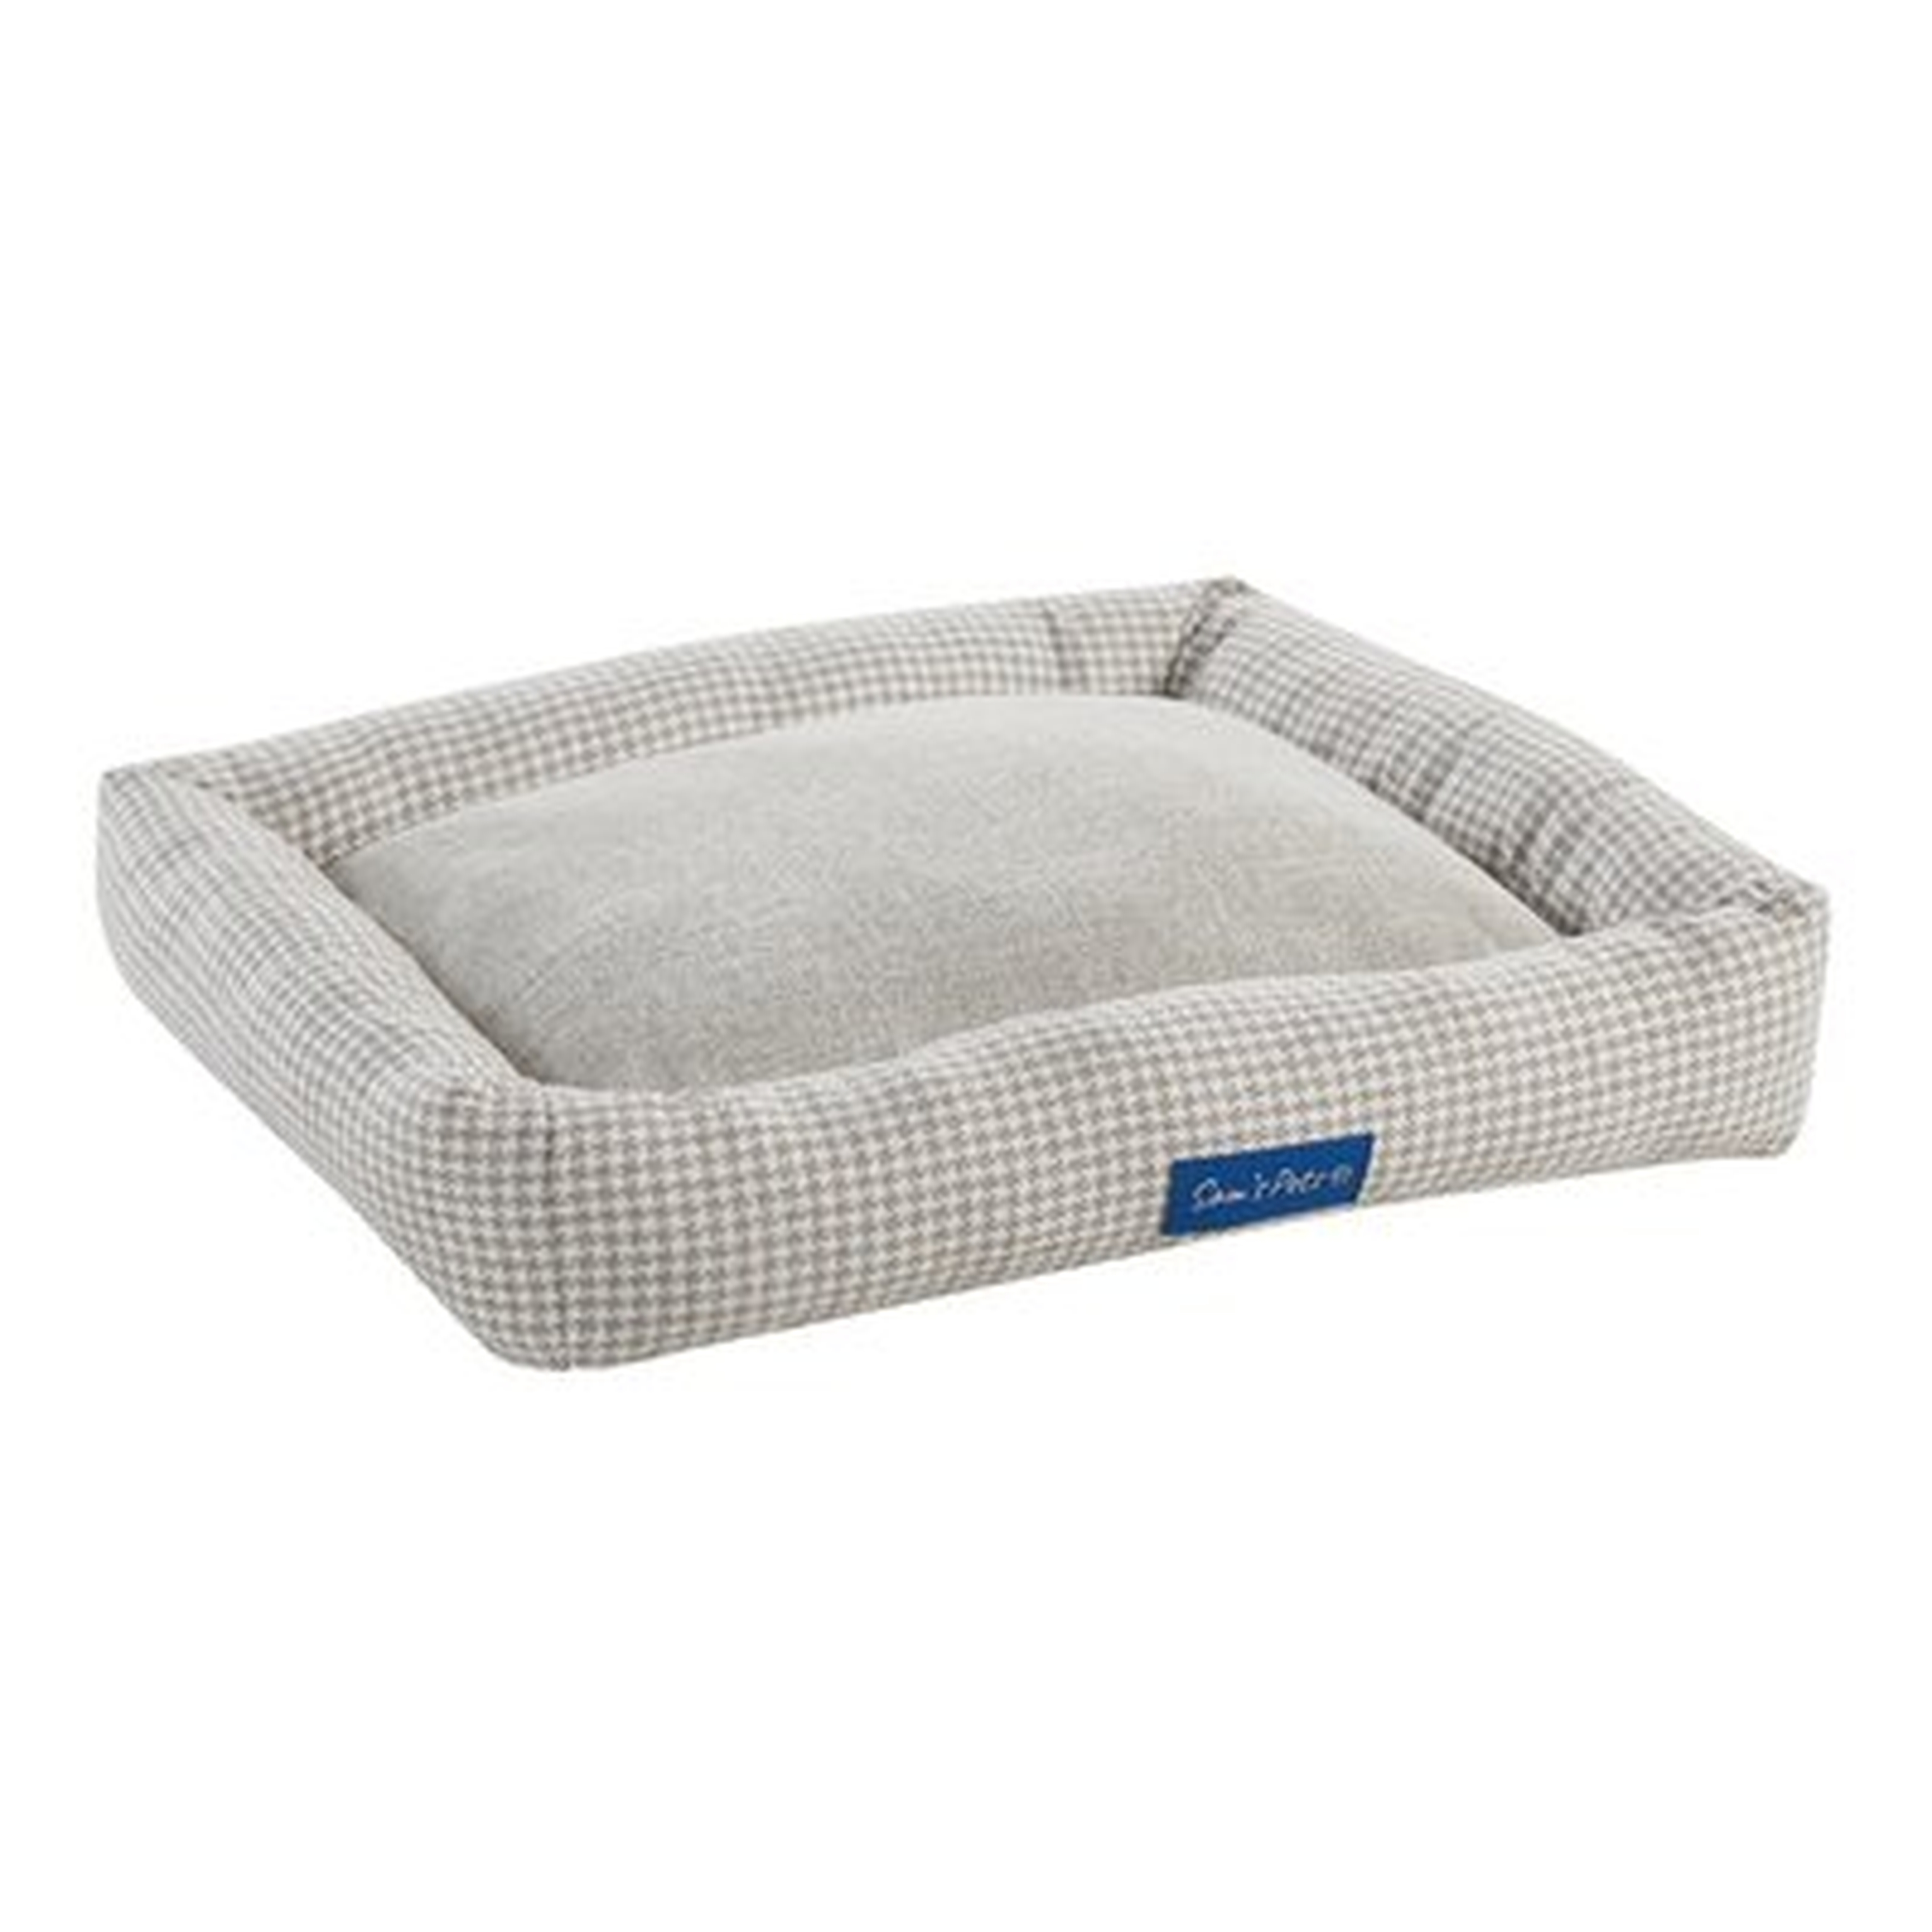 Arlo Dog Bed - Wayfair